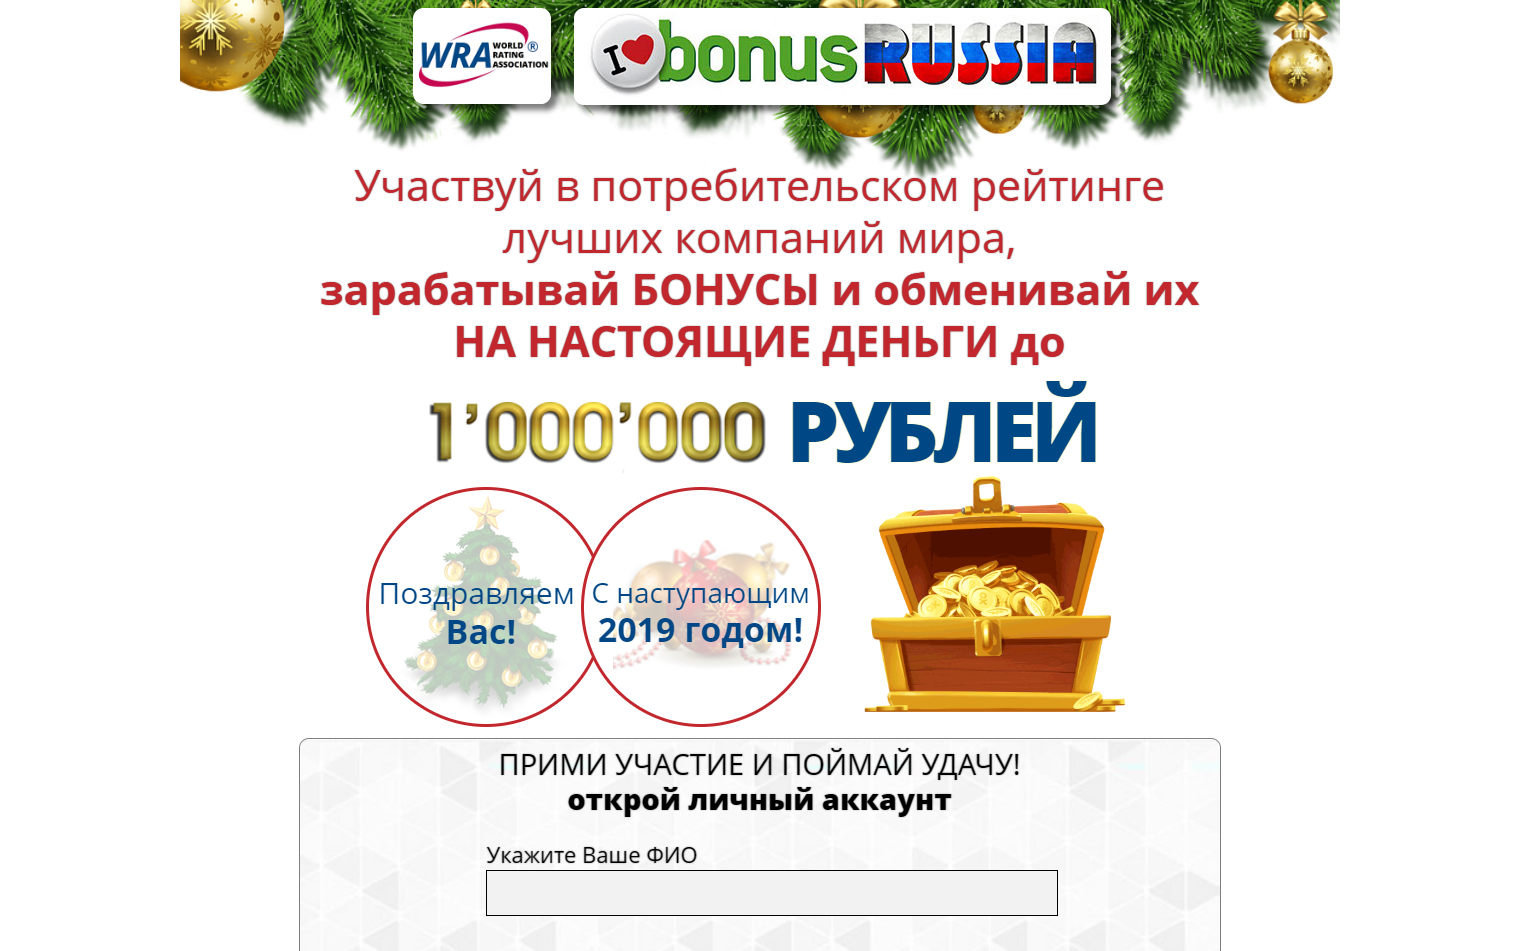 Как заработать 200 рублей в интернете